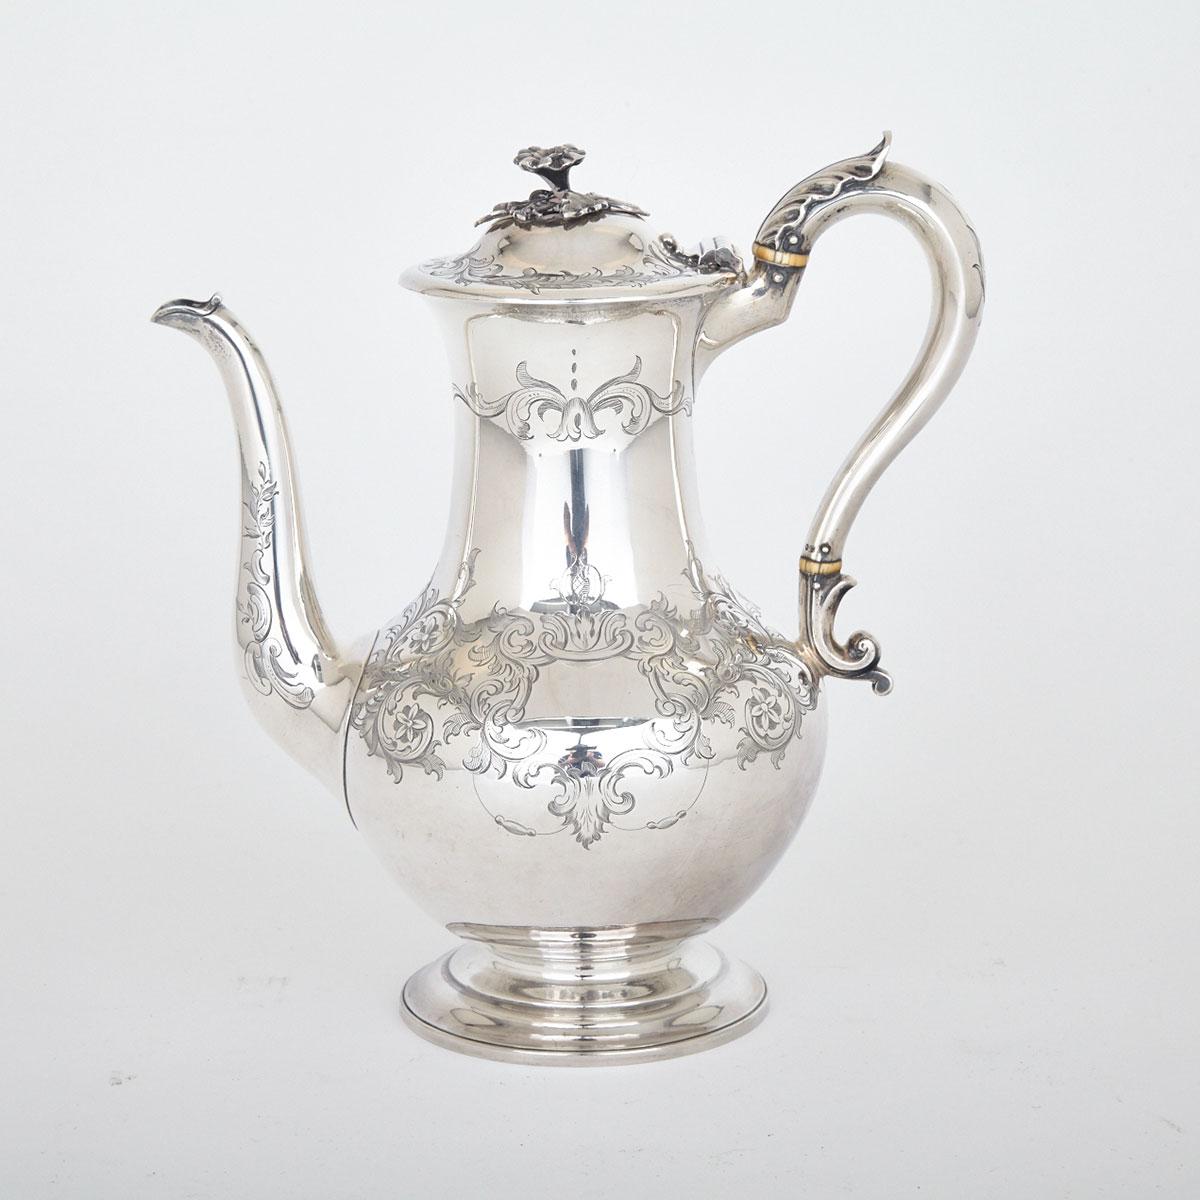 Victorian Silver Coffee Pot, William Moulson, London, 1850